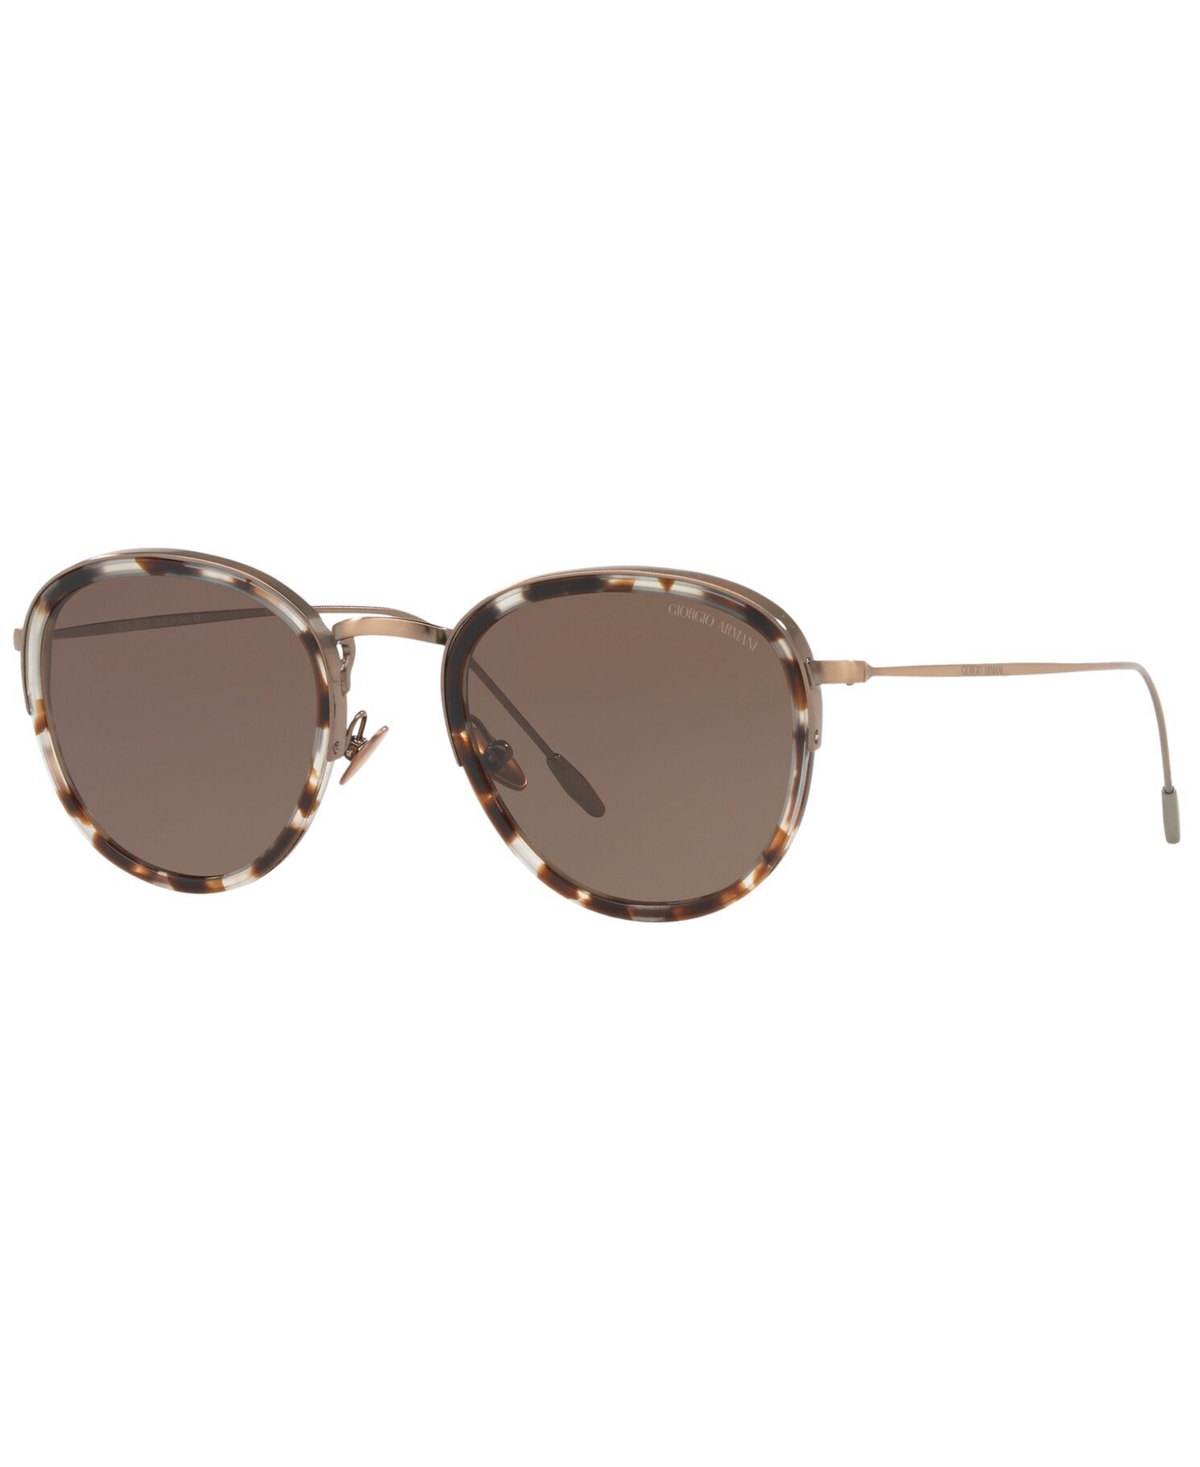 Giorgio Armani Men's Sunglasses In Transparent Army Green,brown